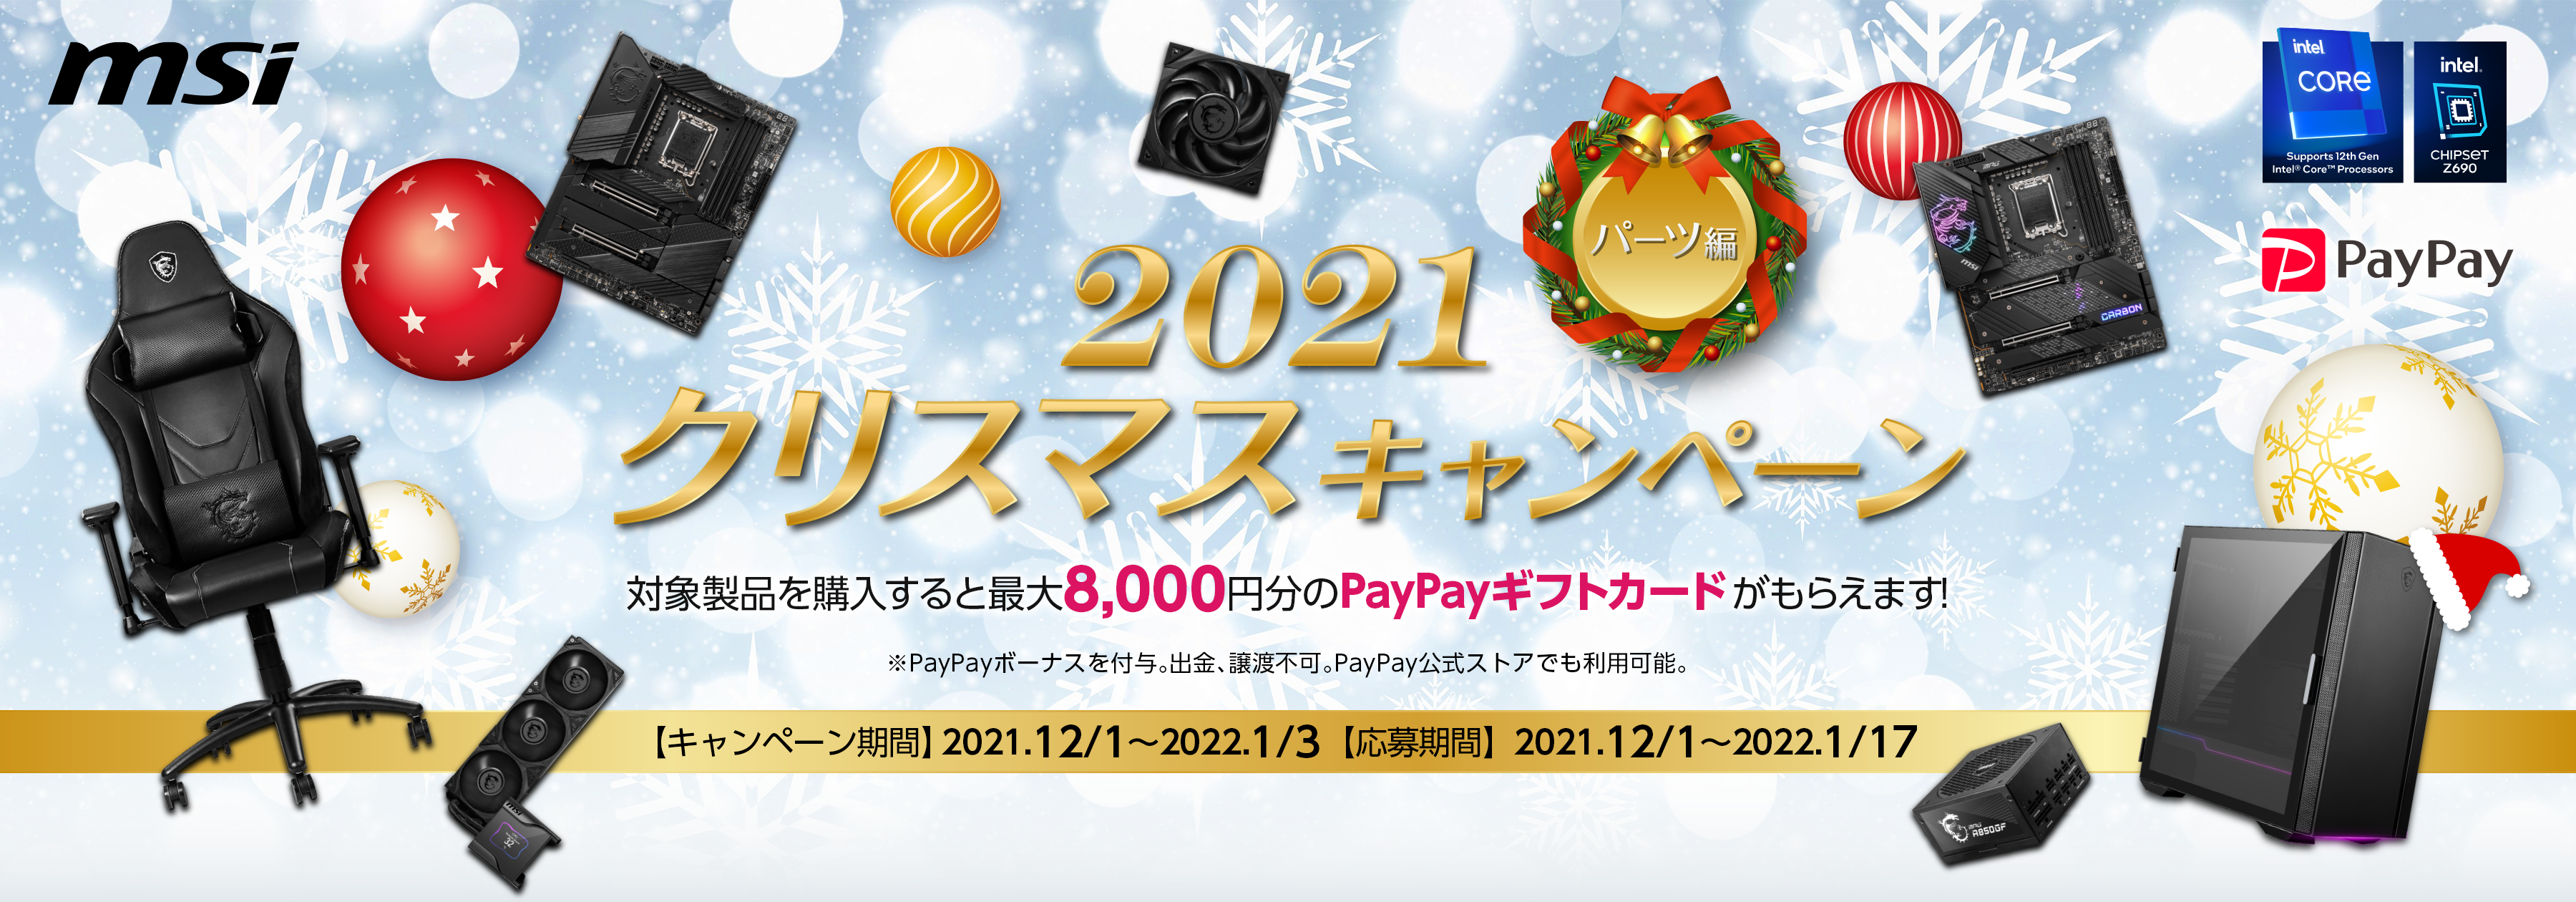 【キャンペーン】MSIが、最大8,000円分のPayPayギフトカードが貰える「2021クリスマスキャンペーン パーツ編」を開催